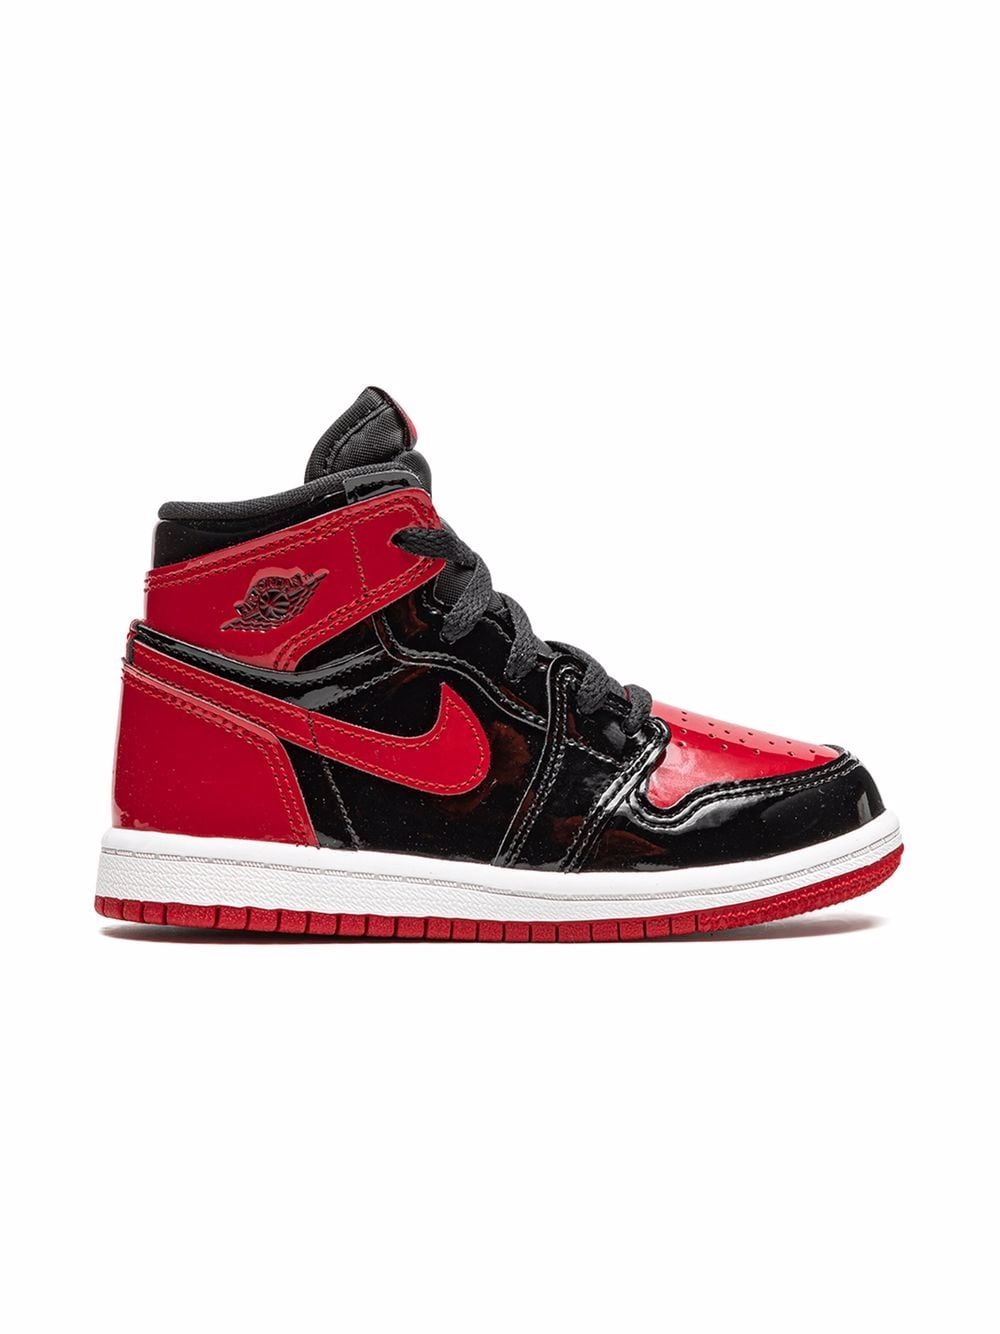 Image 2 of Jordan Kids Air Jordan 1 Retro High OG "Bred Patent" sneakers